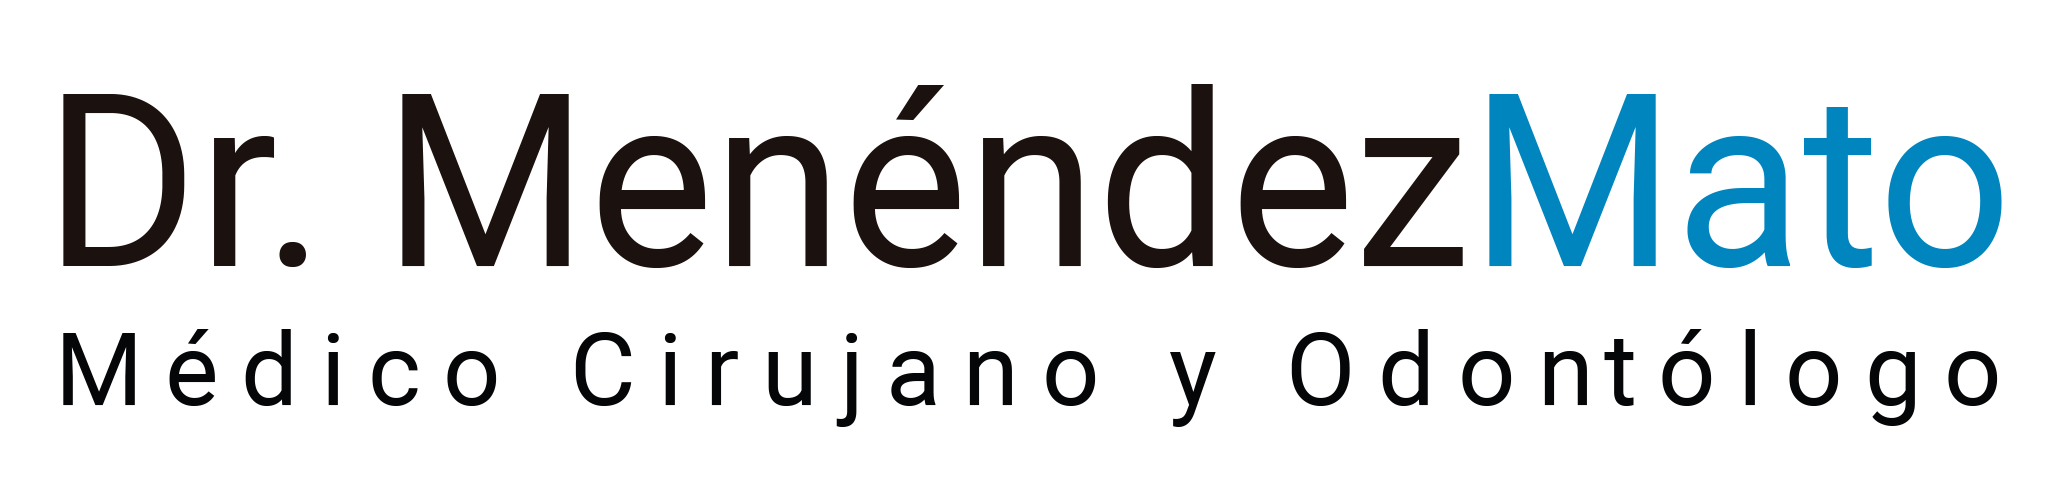 Imagen pie de página Logotipo Clínica Dr Menendez Mato